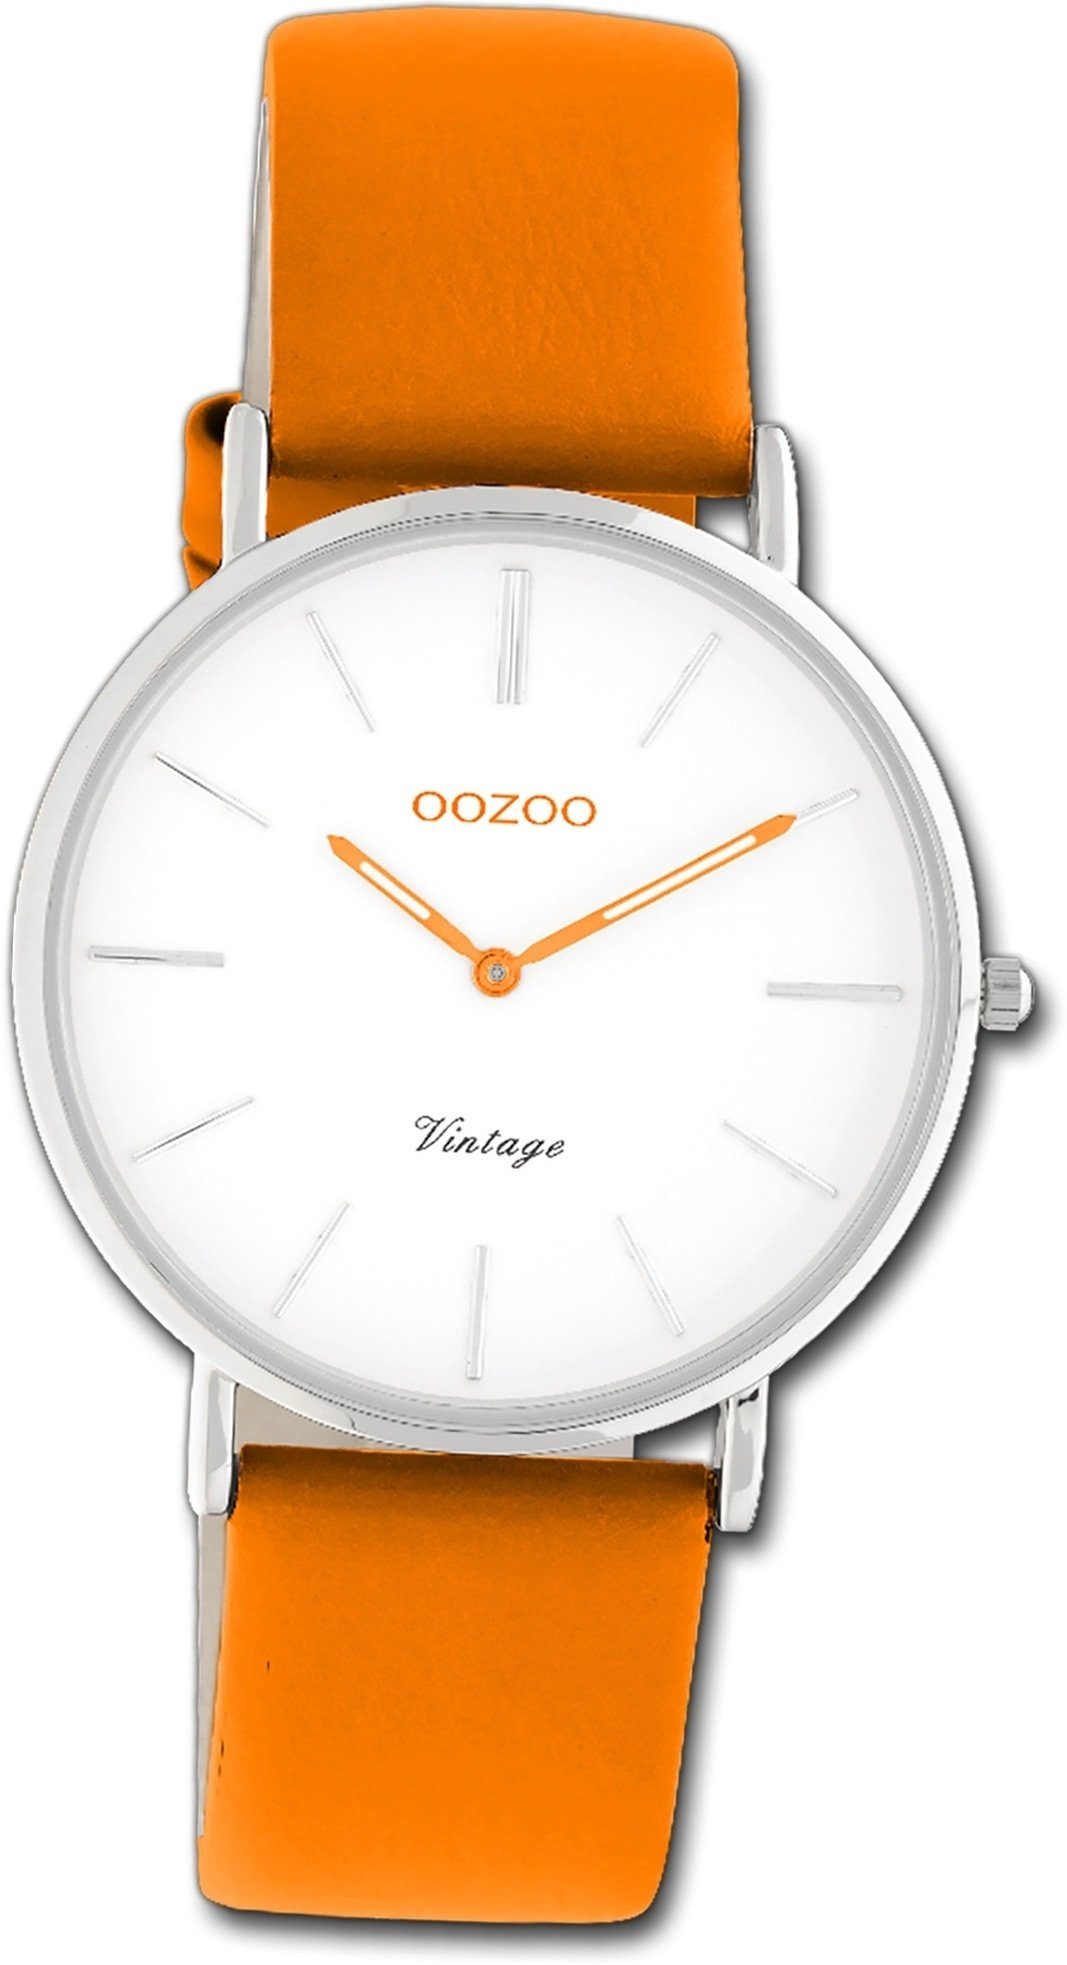 OOZOO Quarzuhr Oozoo Damen Armbanduhr Vintage Series, Damenuhr Lederarmband orange, rundes Gehäuse, mittel (ca. 36mm)